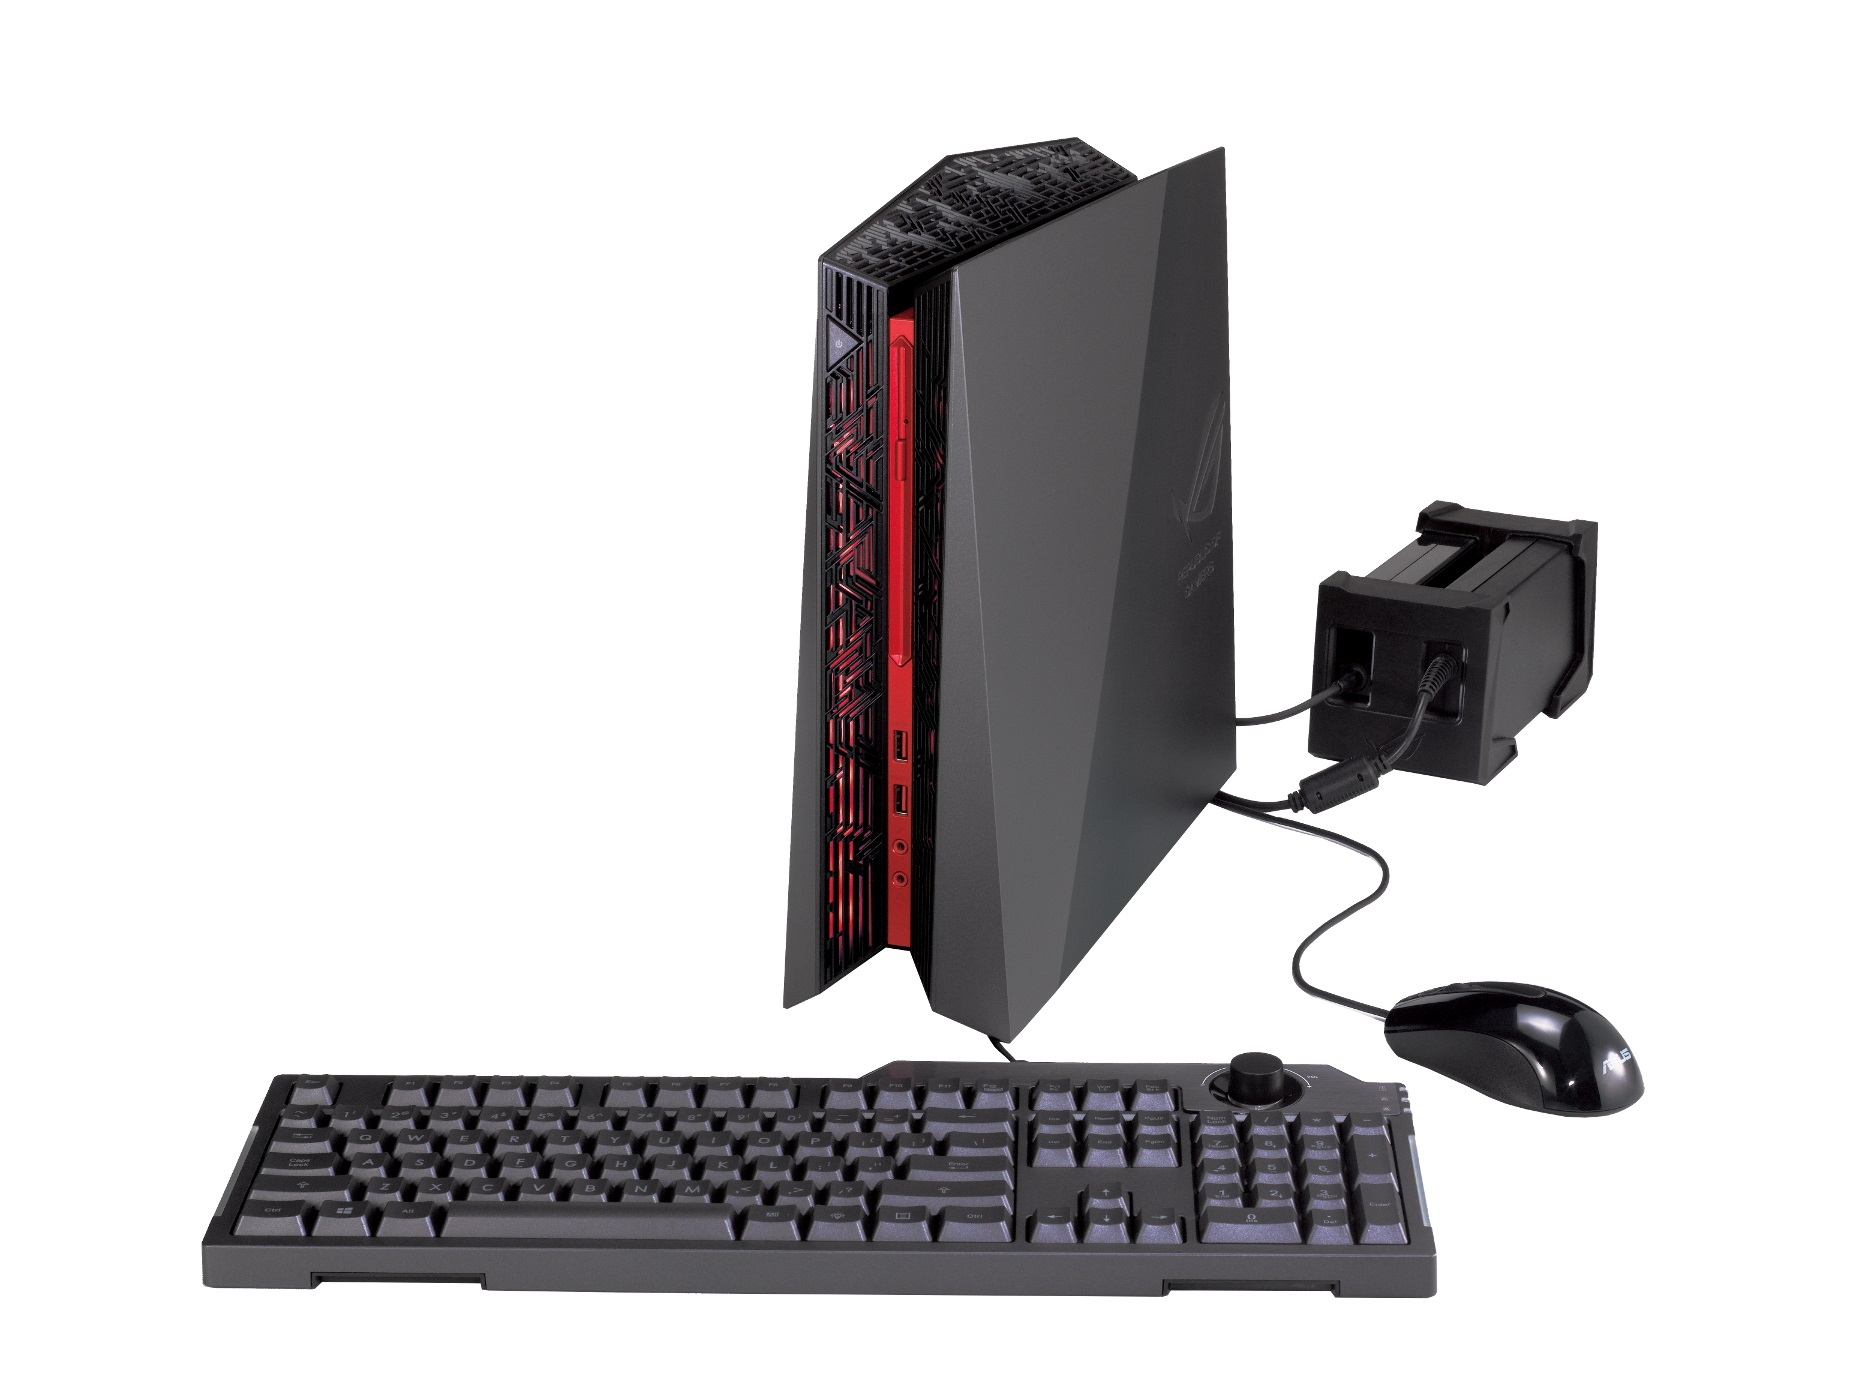 ASUS ROG Announces G20CB Gaming Desktop